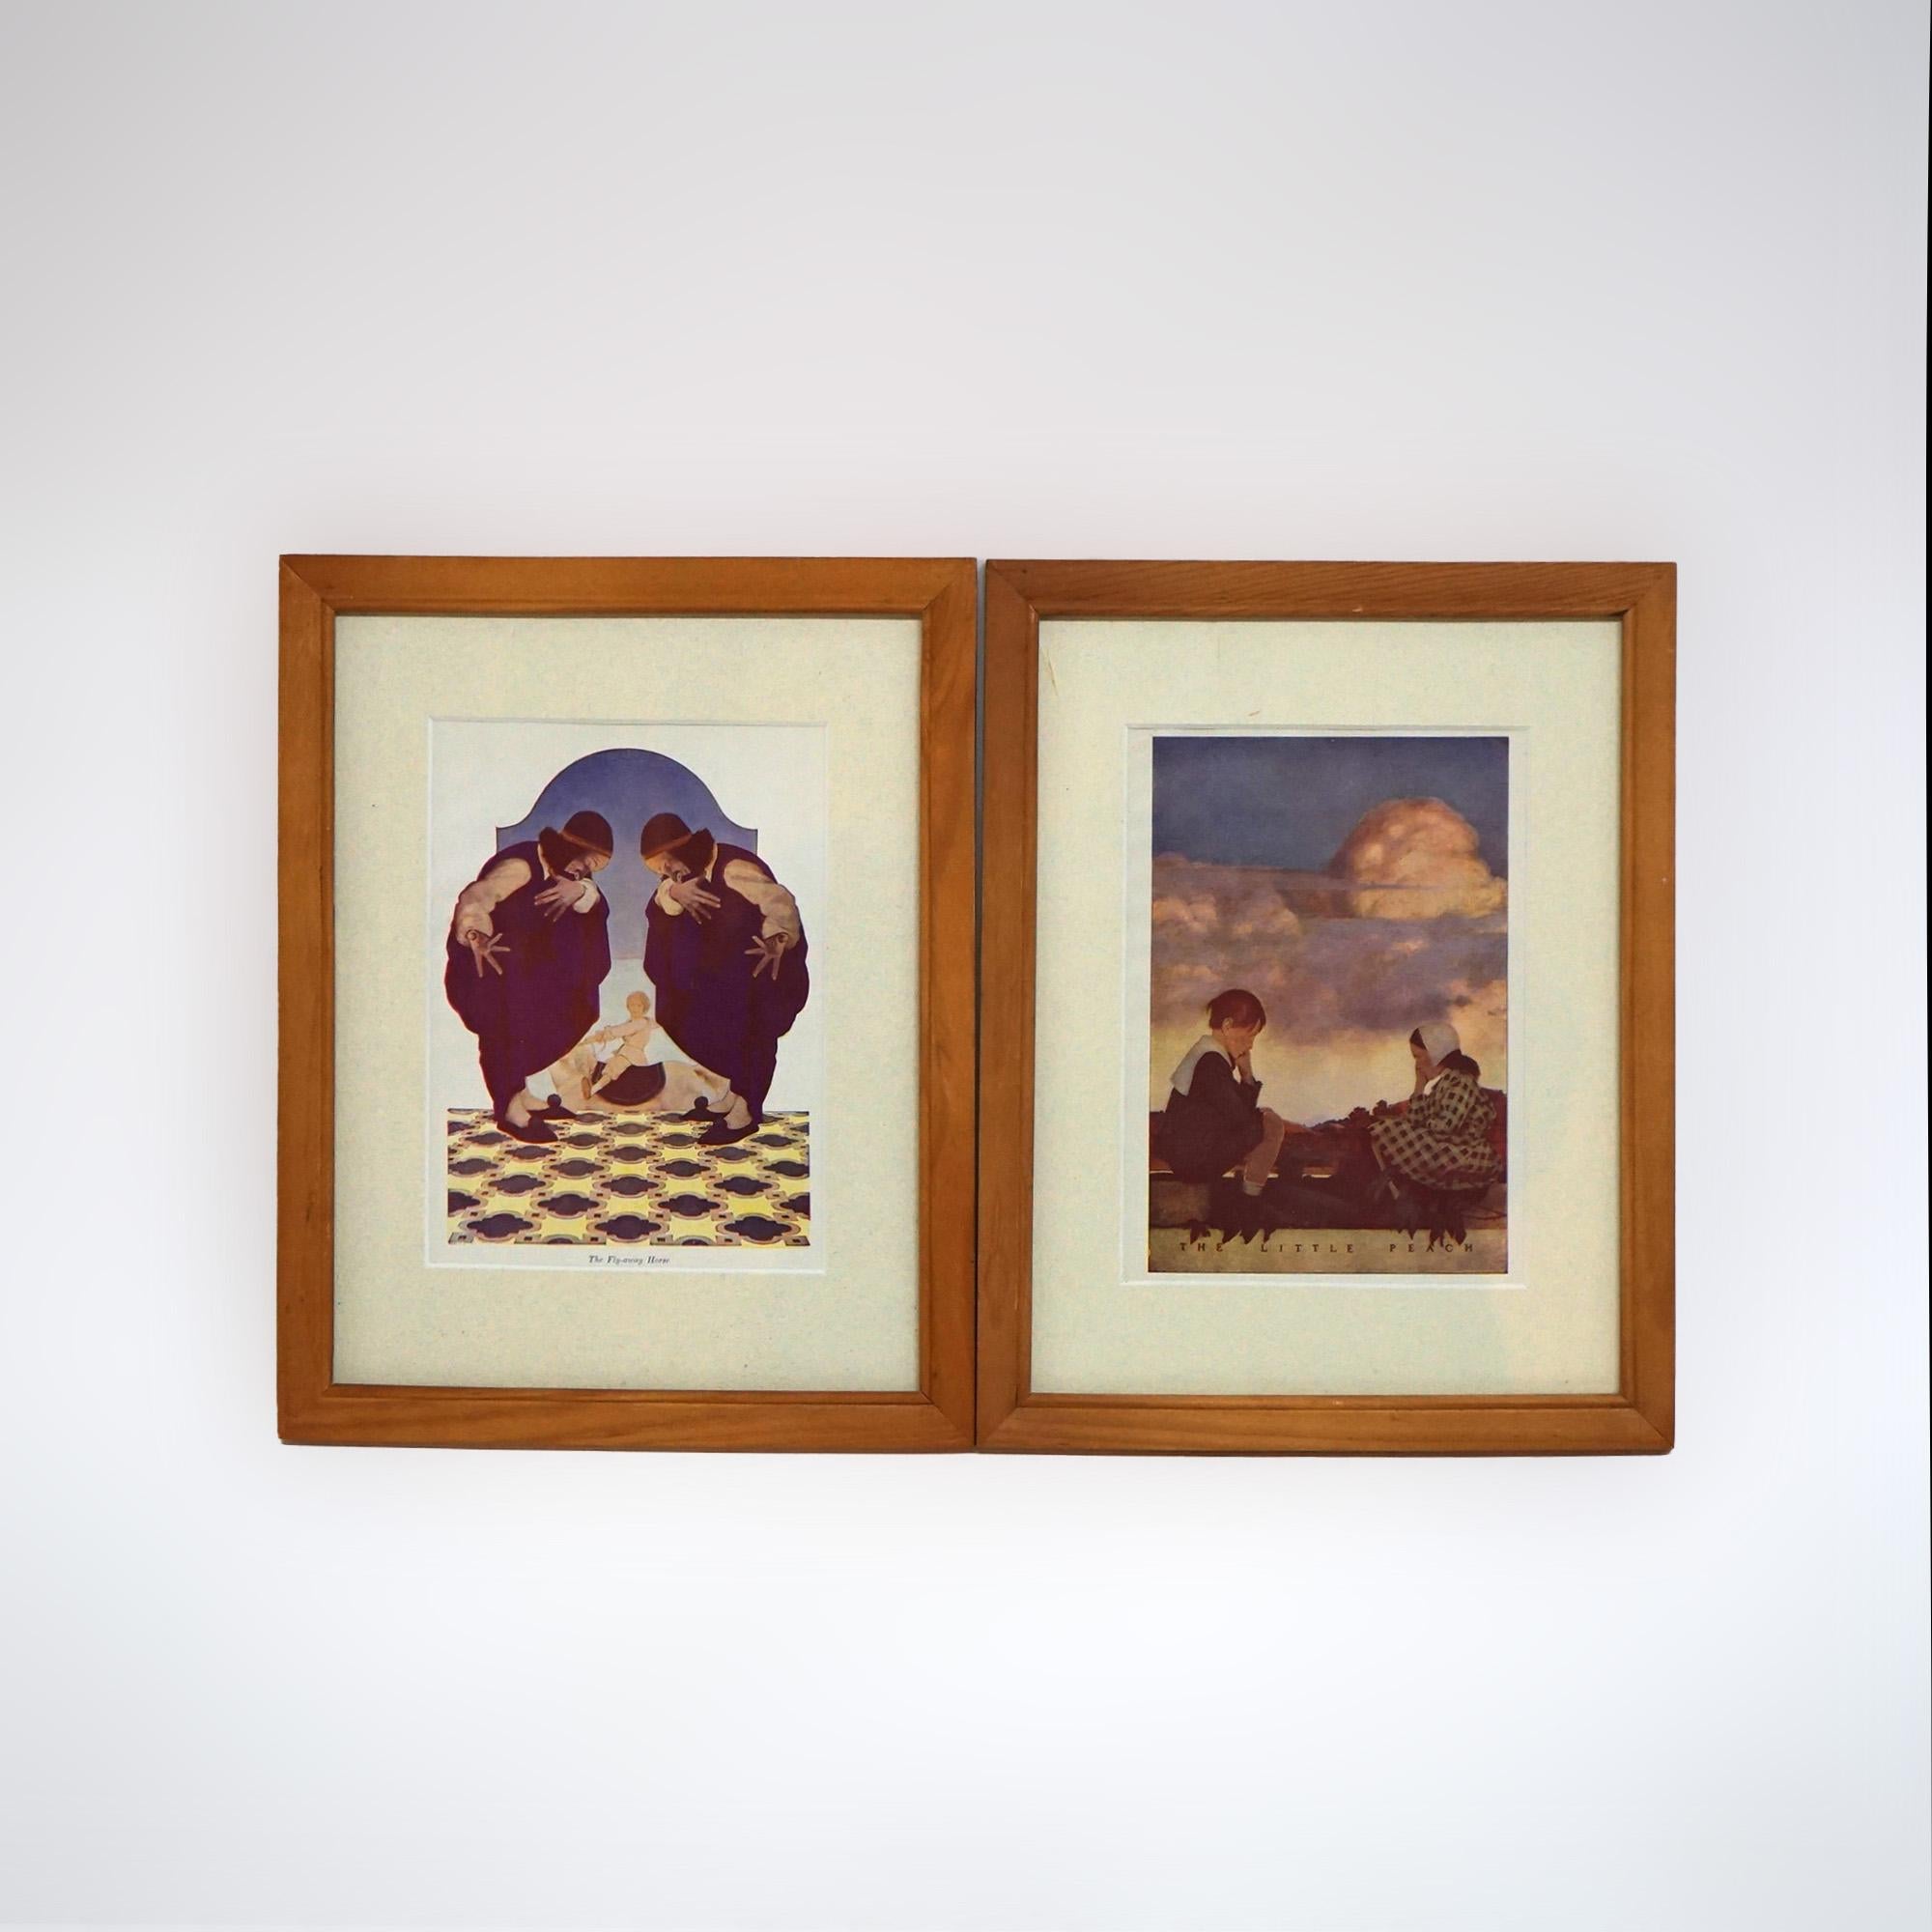 Fünf Art-Déco-Büchertafeln von Maxfield Parrish im Art déco-Stil, gerahmt, um 1920

Maße - 12 